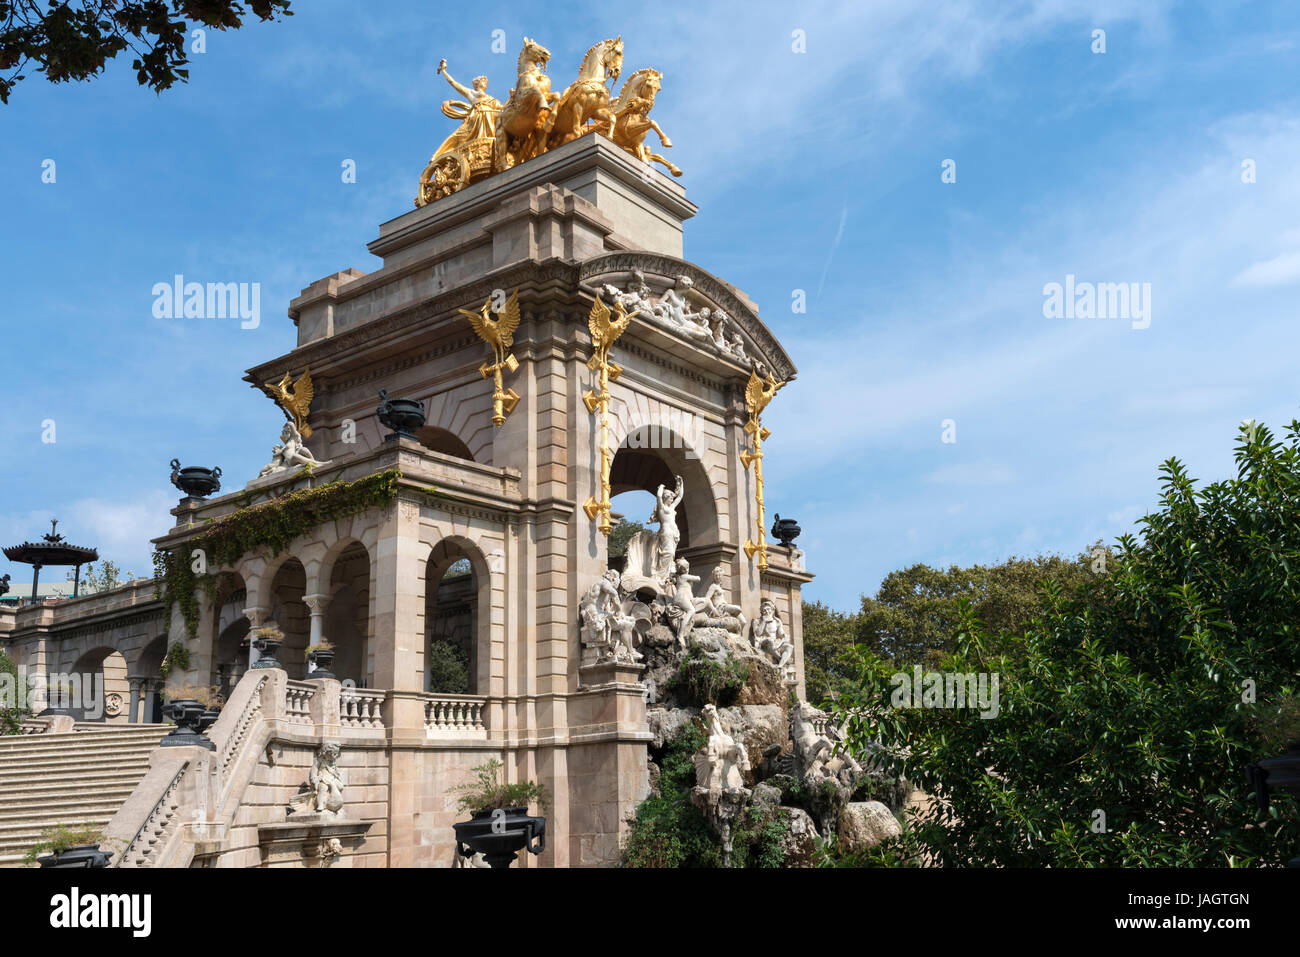 Monument in the Parc de la Ciutadella, Barcelona, Spain Stock Photo